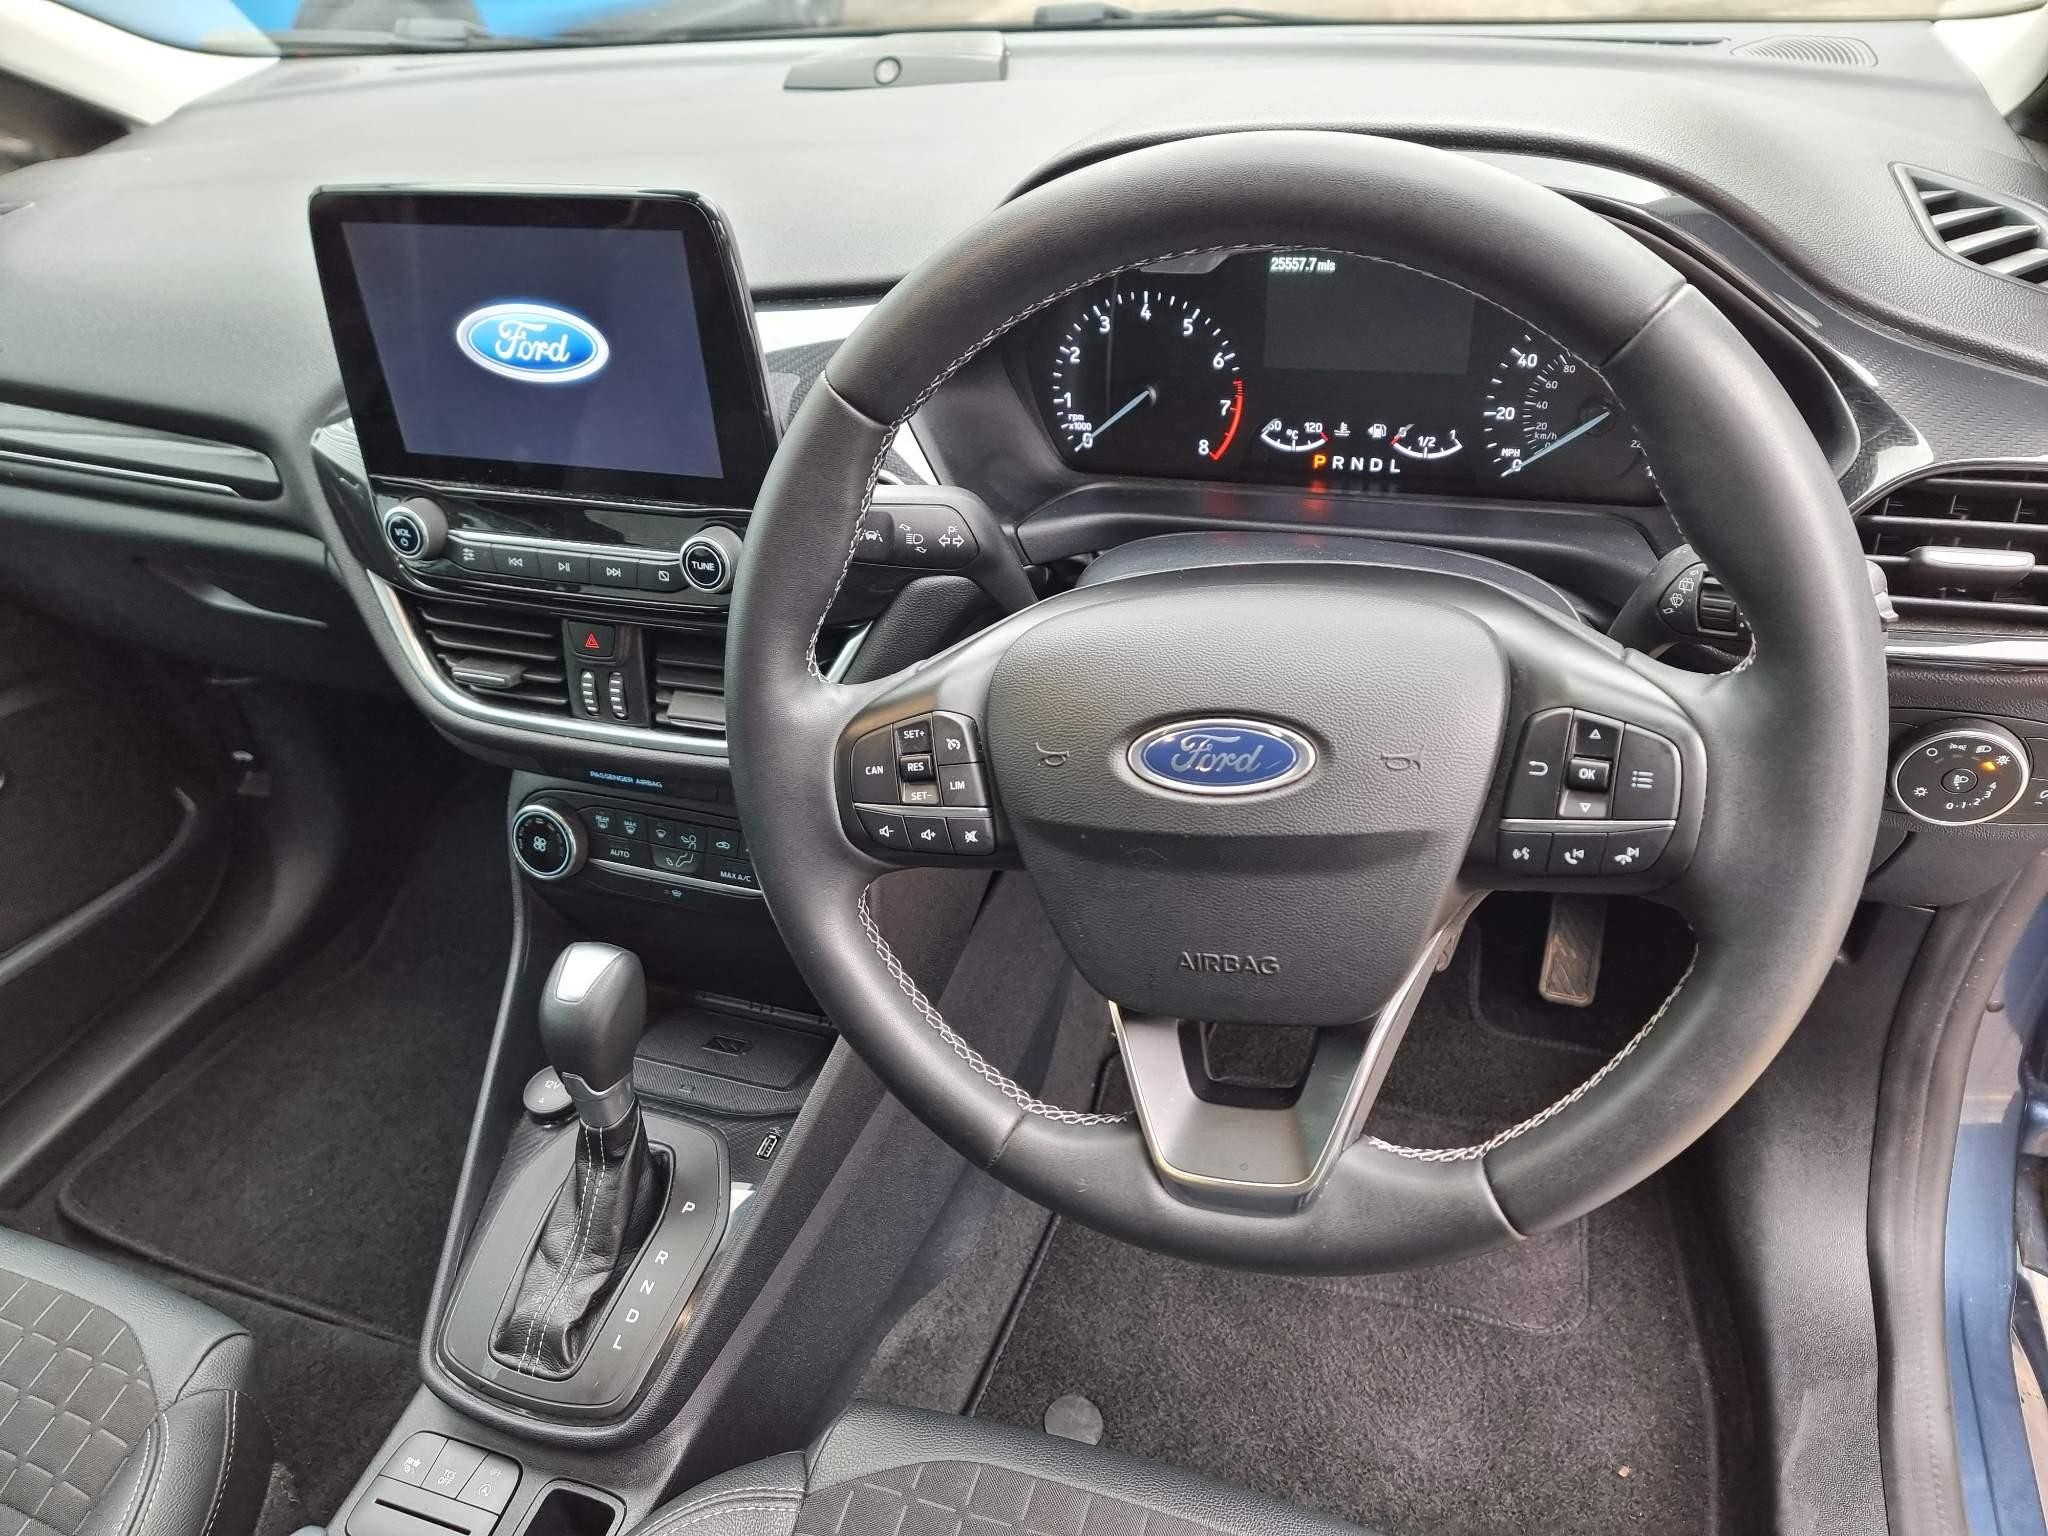 Ford Fiesta 1.0 EcoBoost 125 Titanium X 5dr Auto [7 Speed] (MA21LJU) image 10